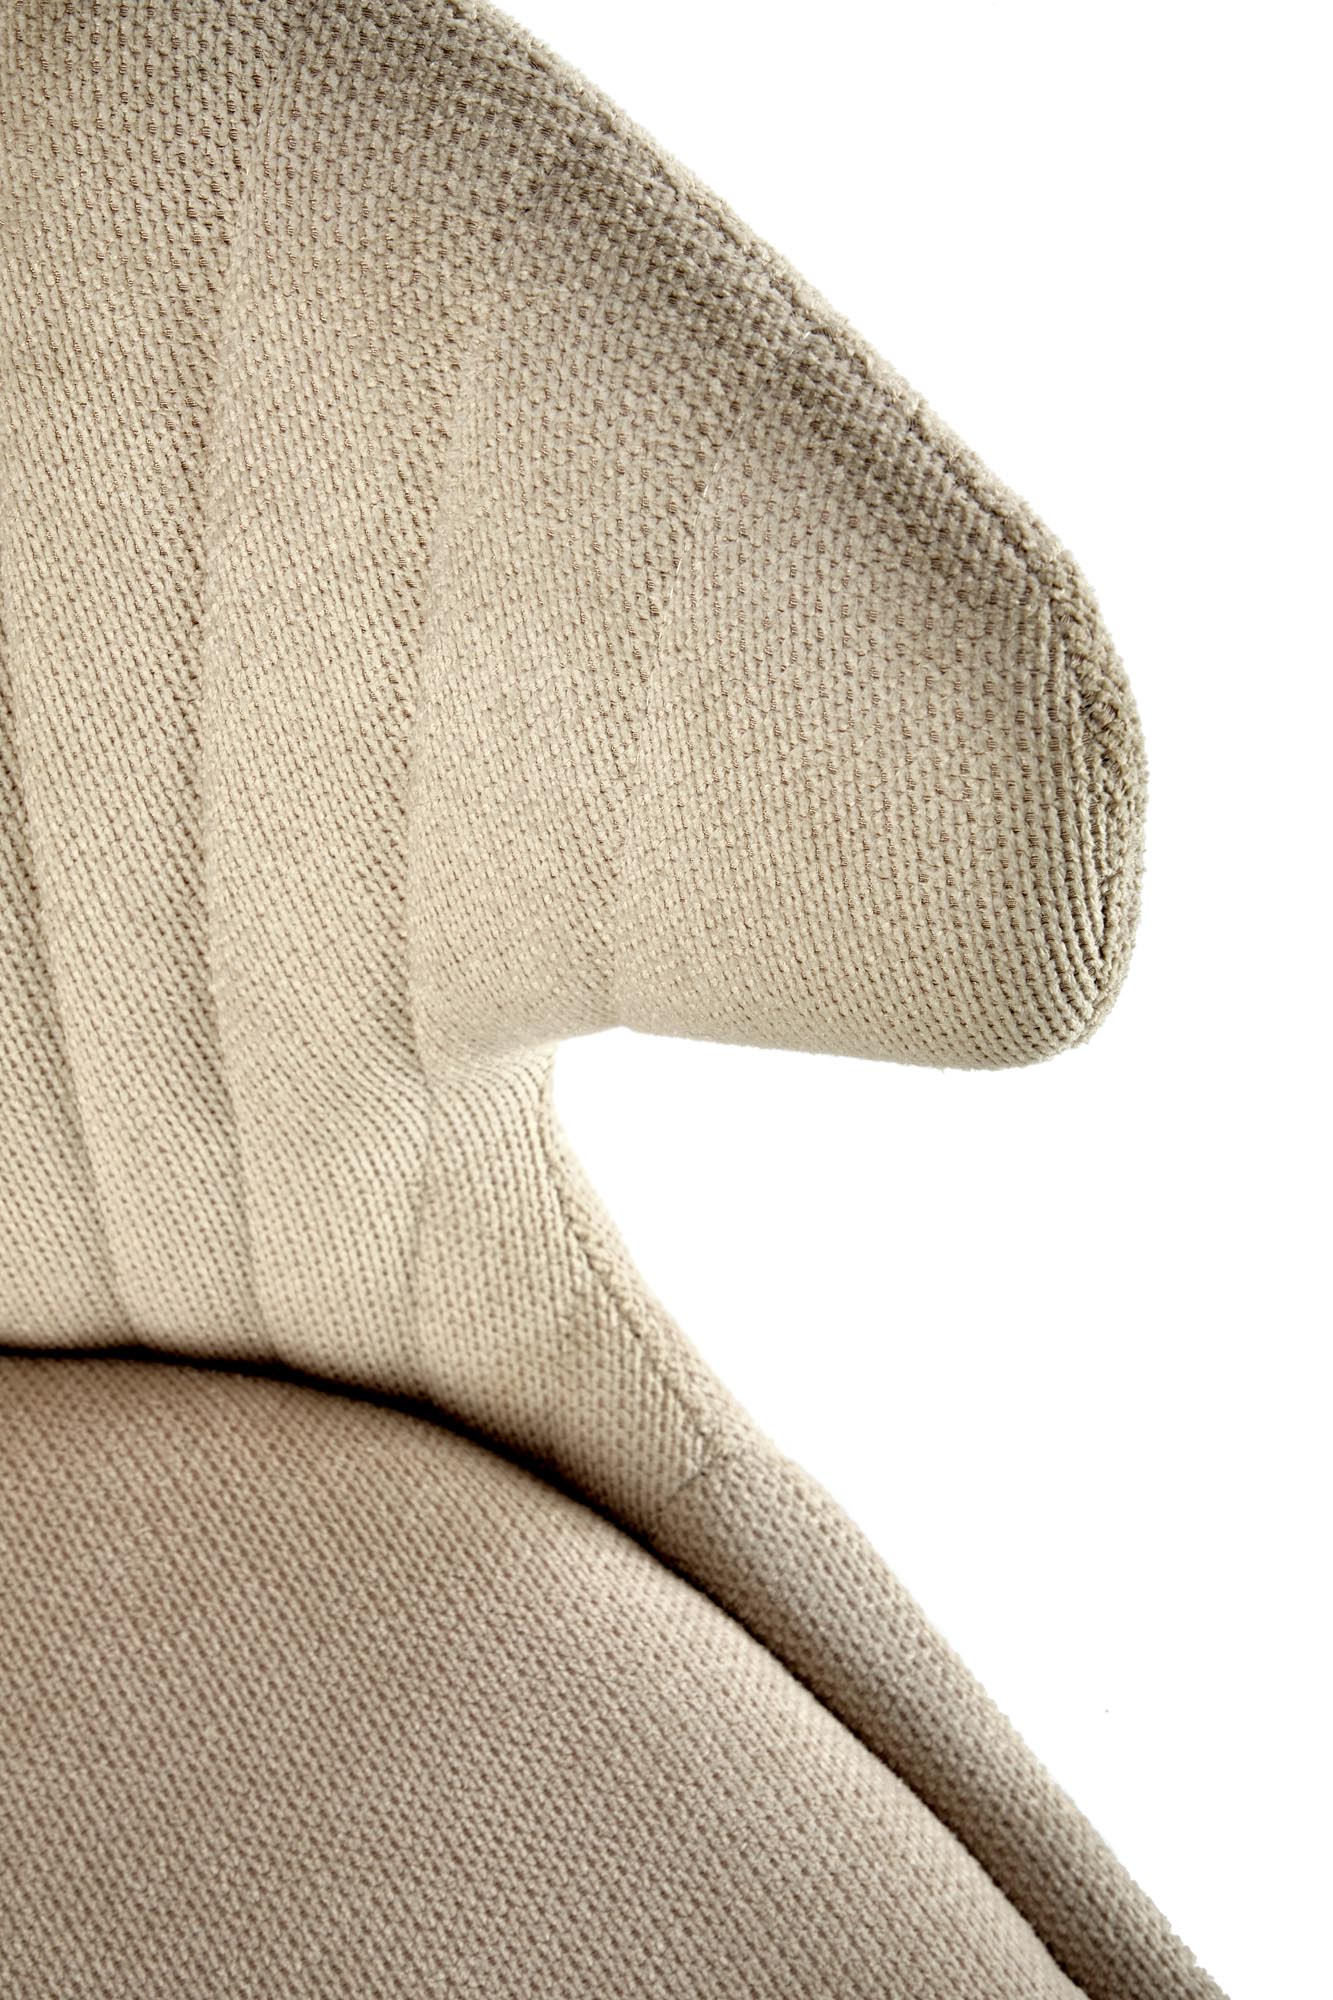 Scaun tapițat K496 - bej deschis Židle čalouněné k496 - jasný béžový